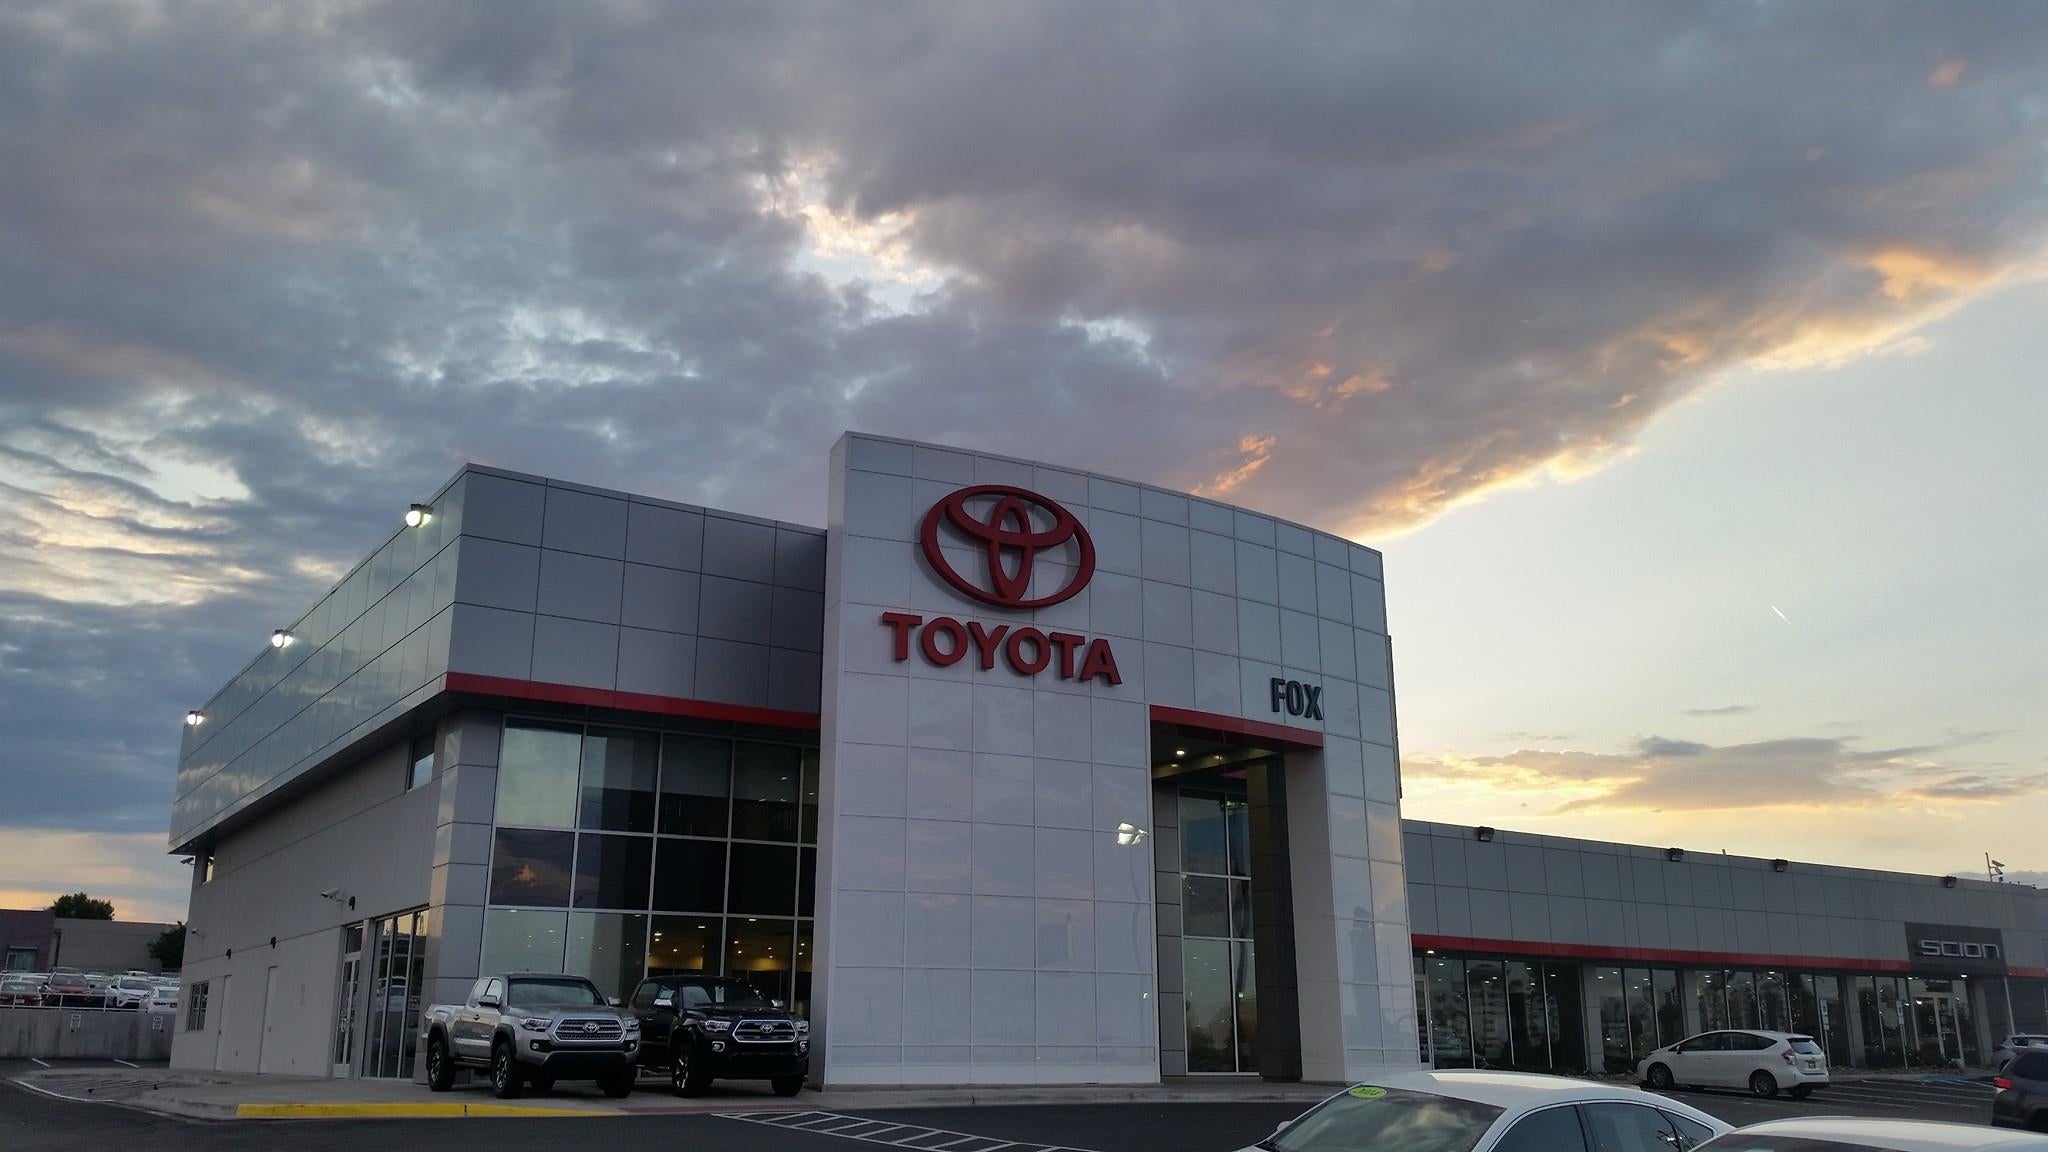 Fox Toyota of El Paso